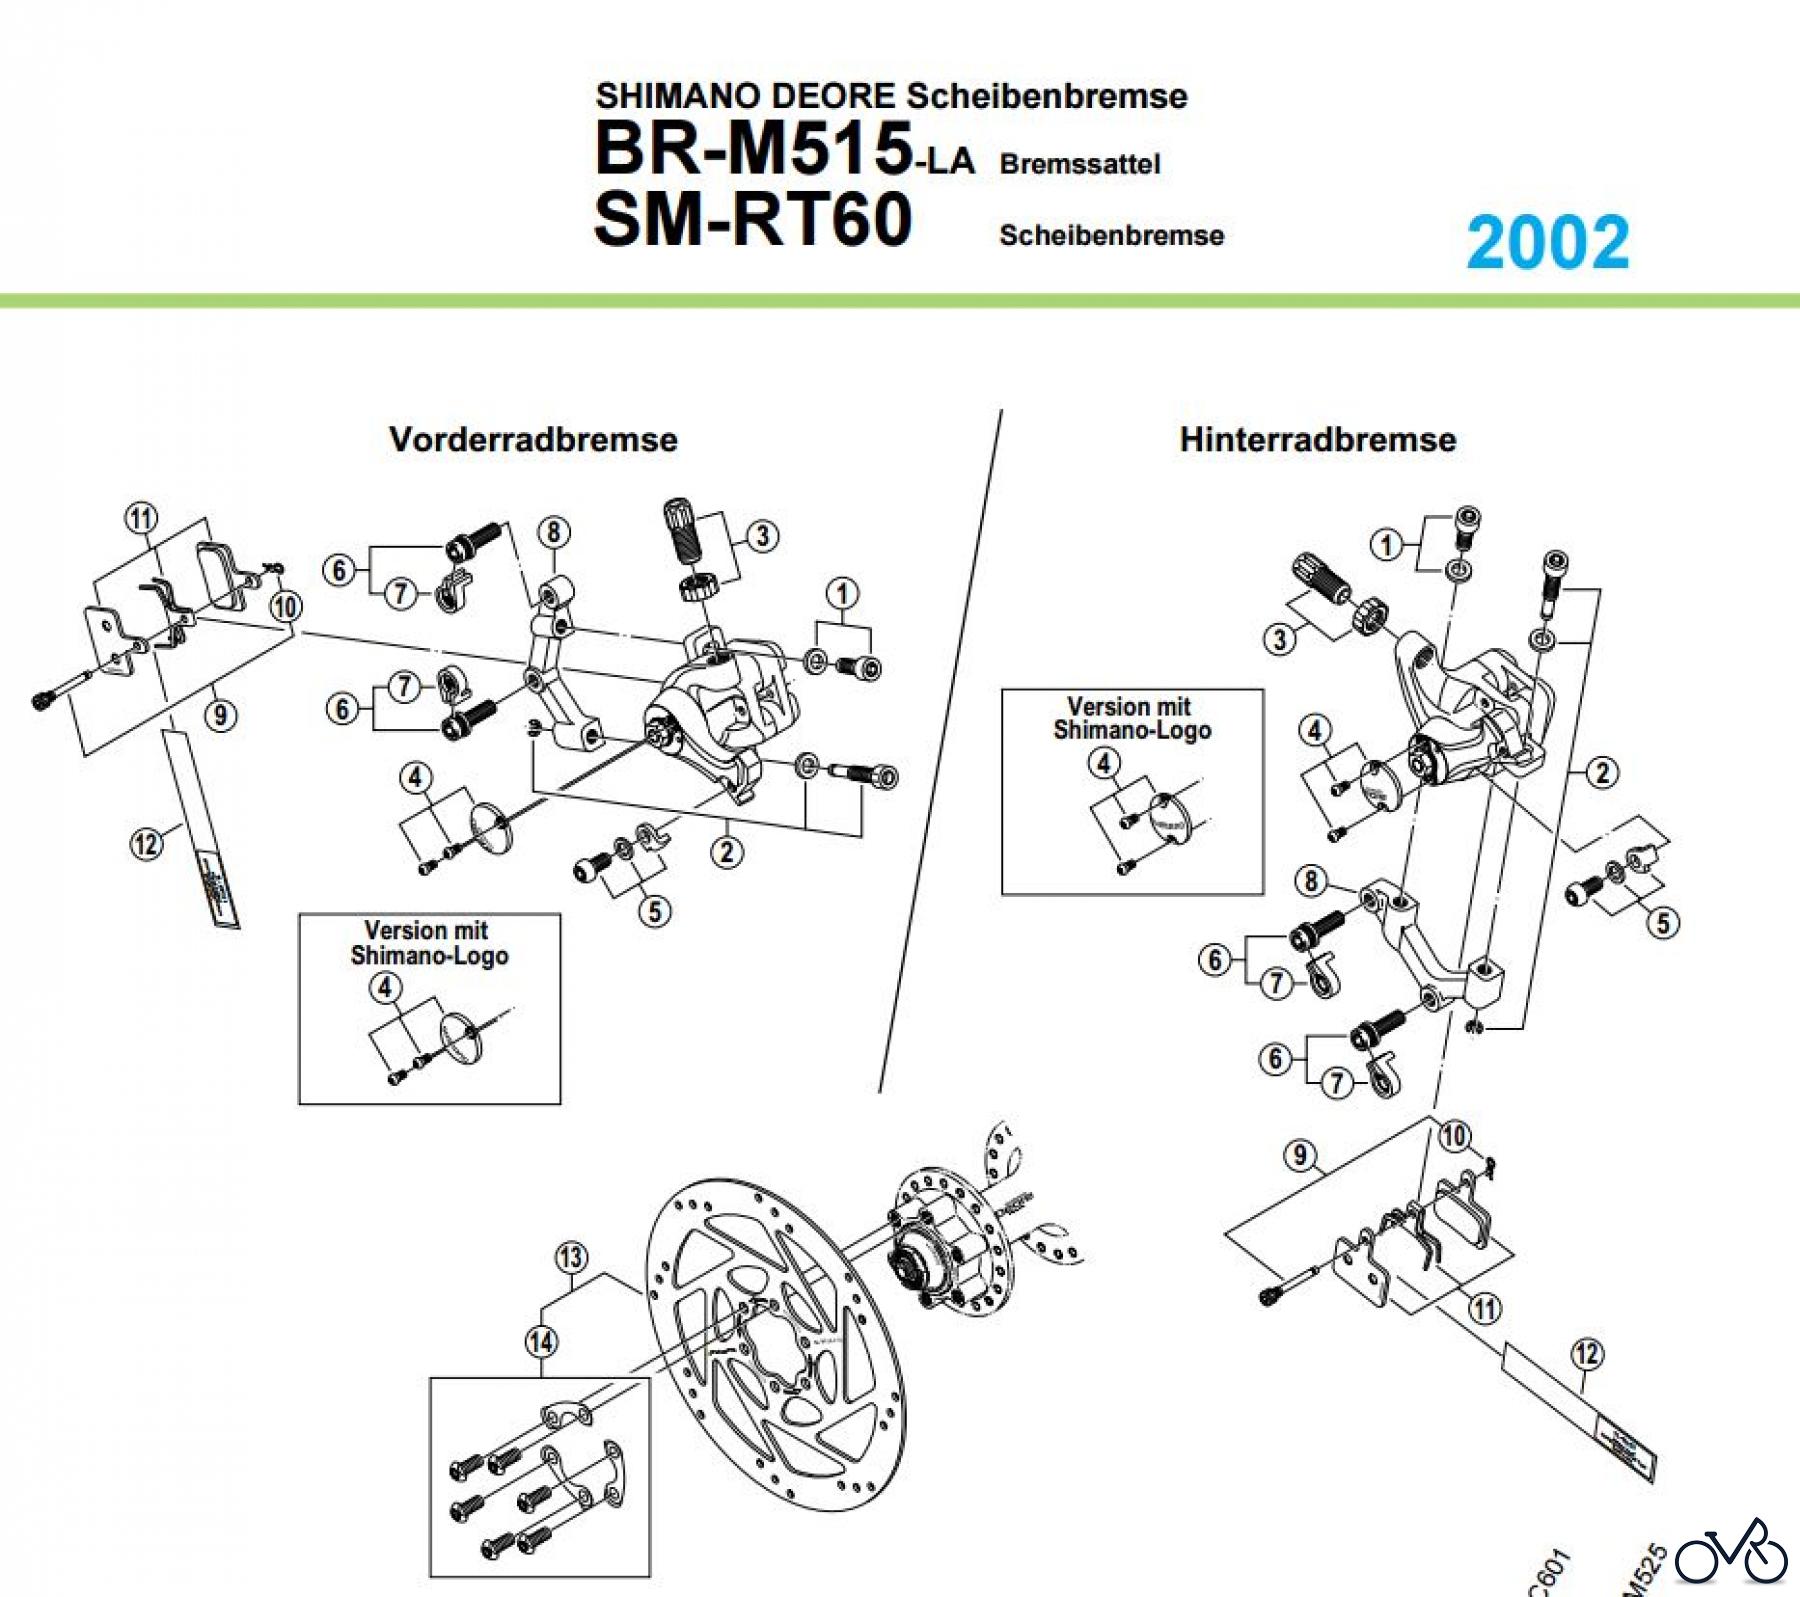  Shimano BR Brake - Bremse BR-M515-LA, 2000 SHIMANO DEORE Scheibenbremse